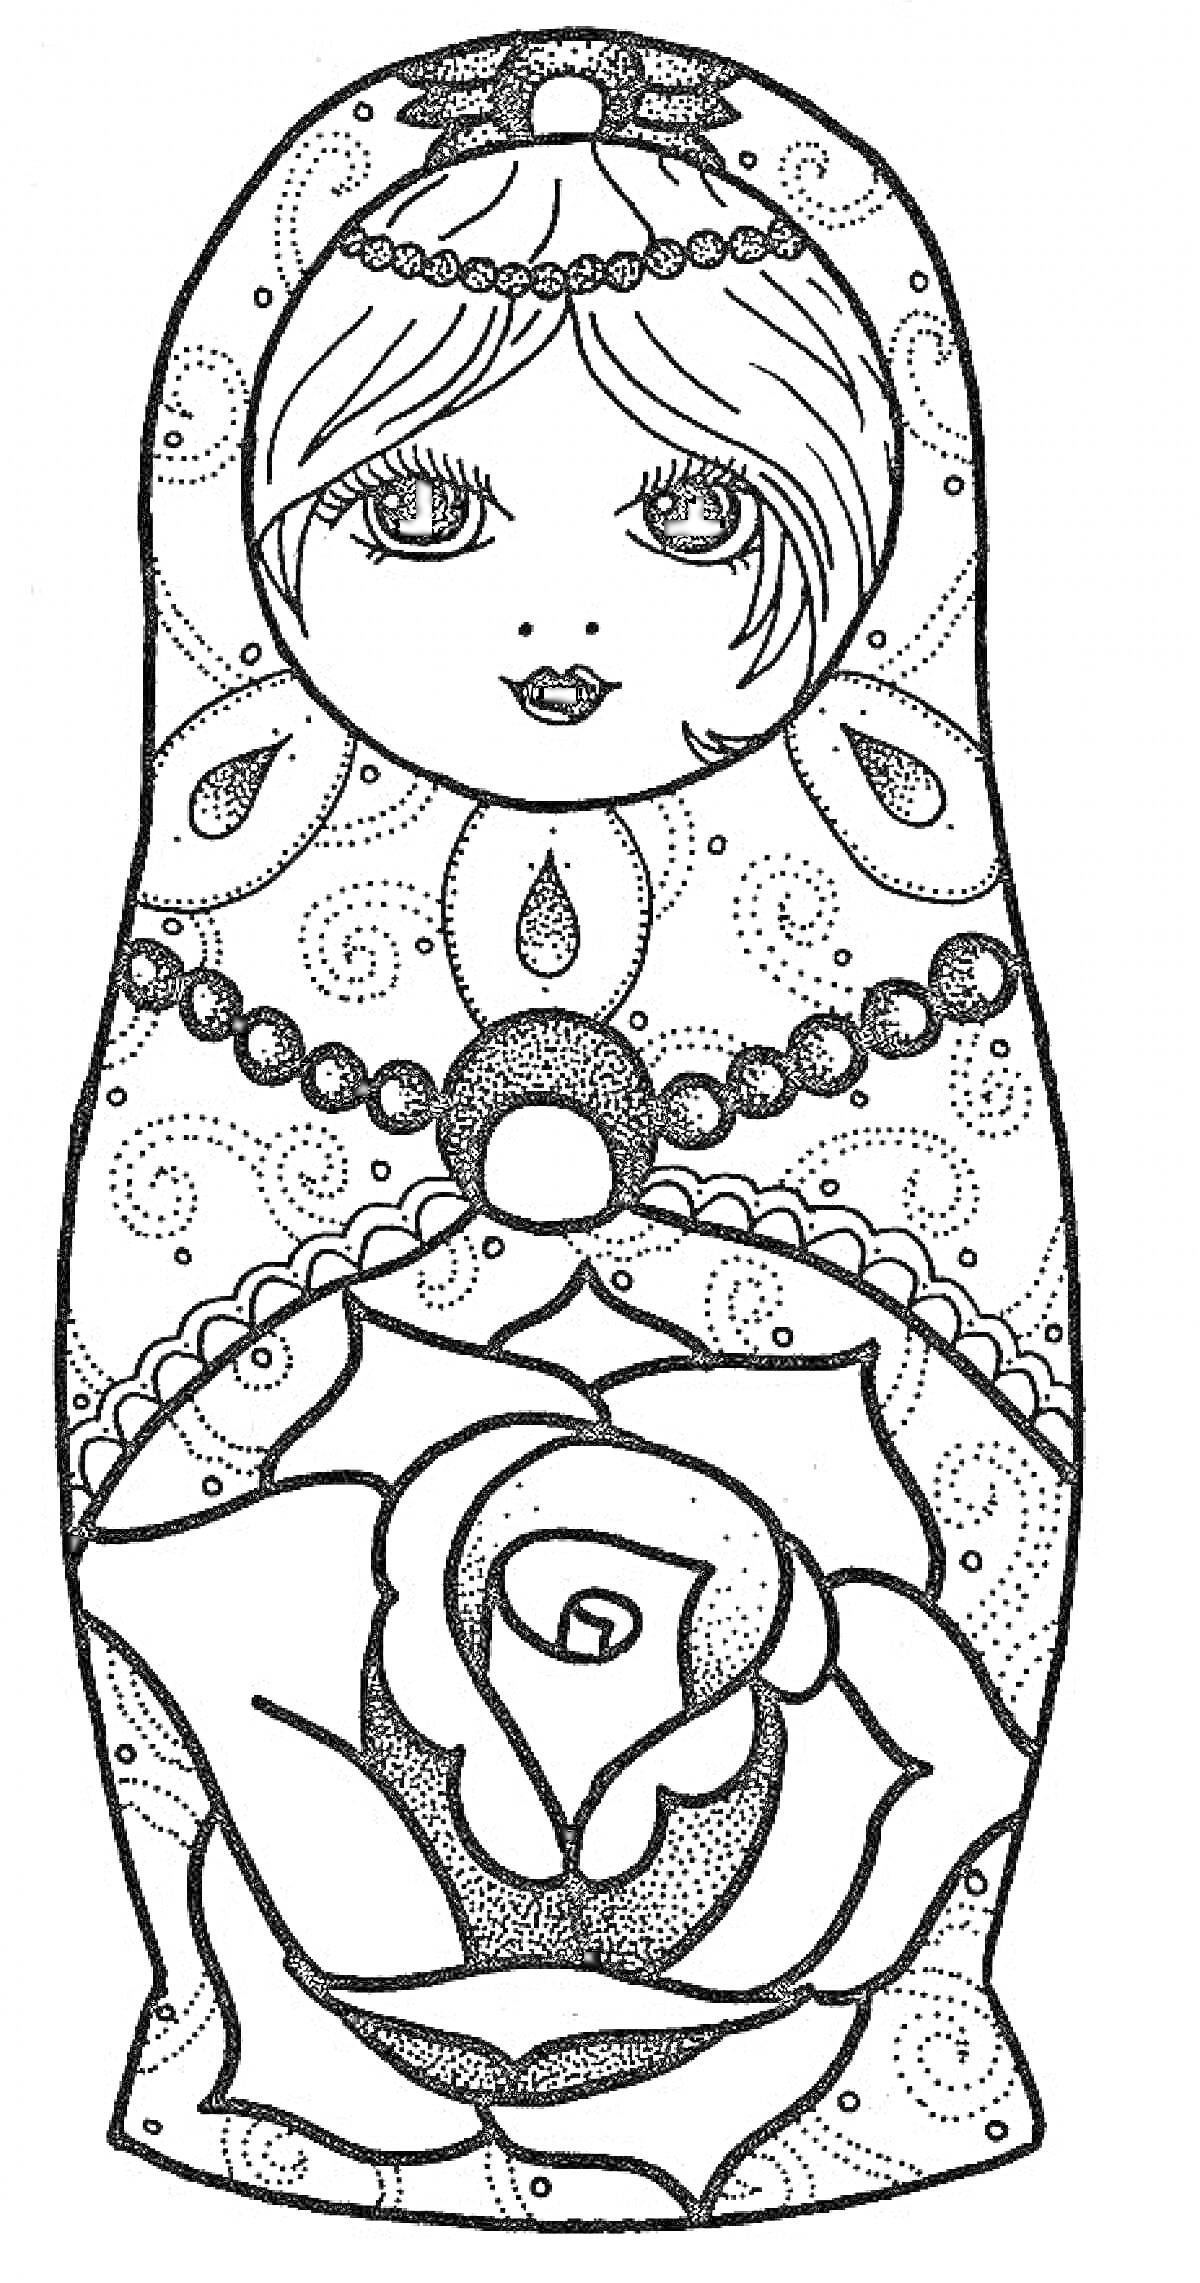 Матрешка с крупной розой на платье, узорами и красивым ожерельем